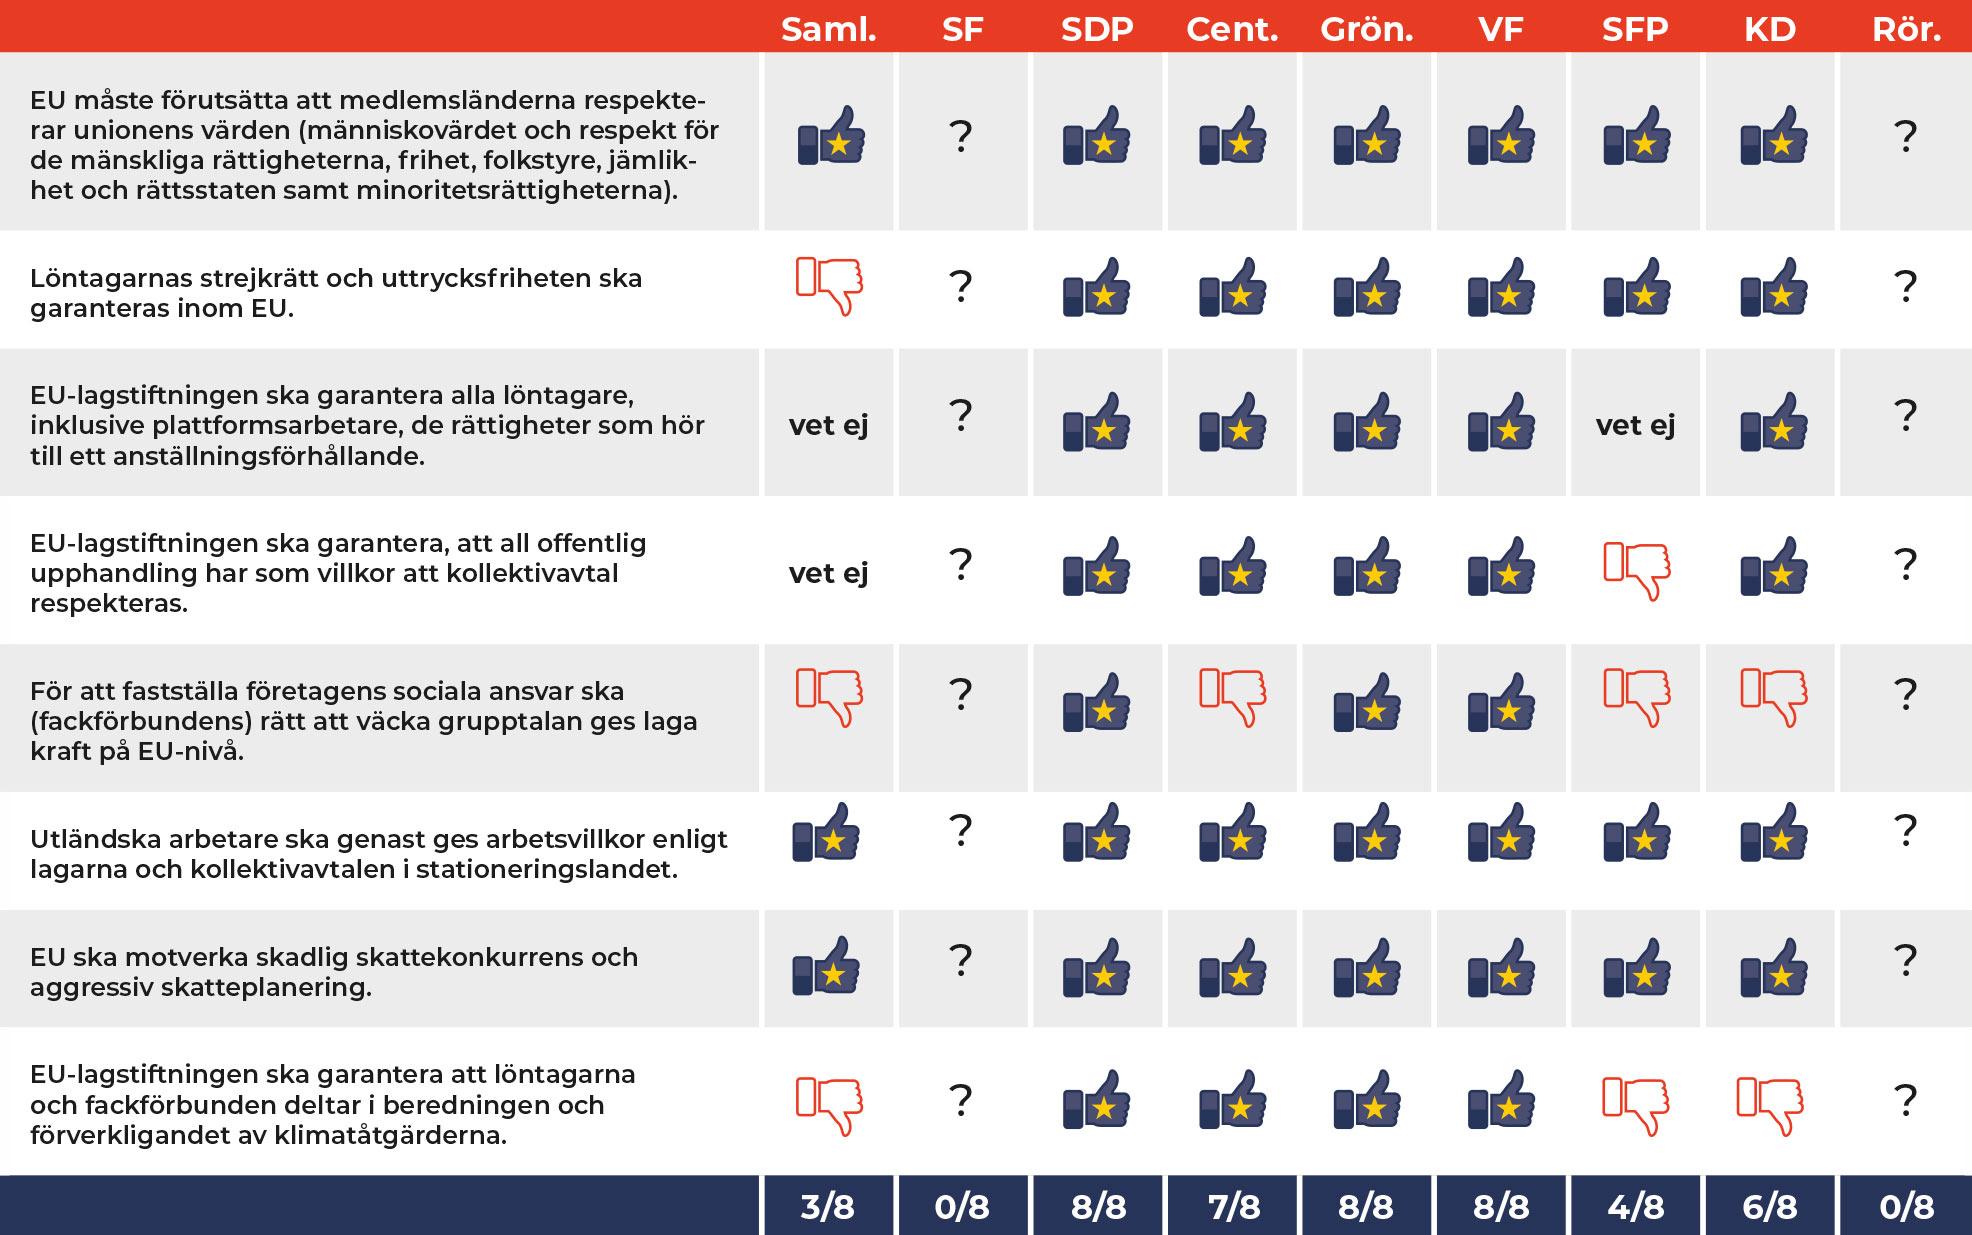 Tabellen visar hur partierna har svarat på åtta frågor som är viktiga för löntagarna.